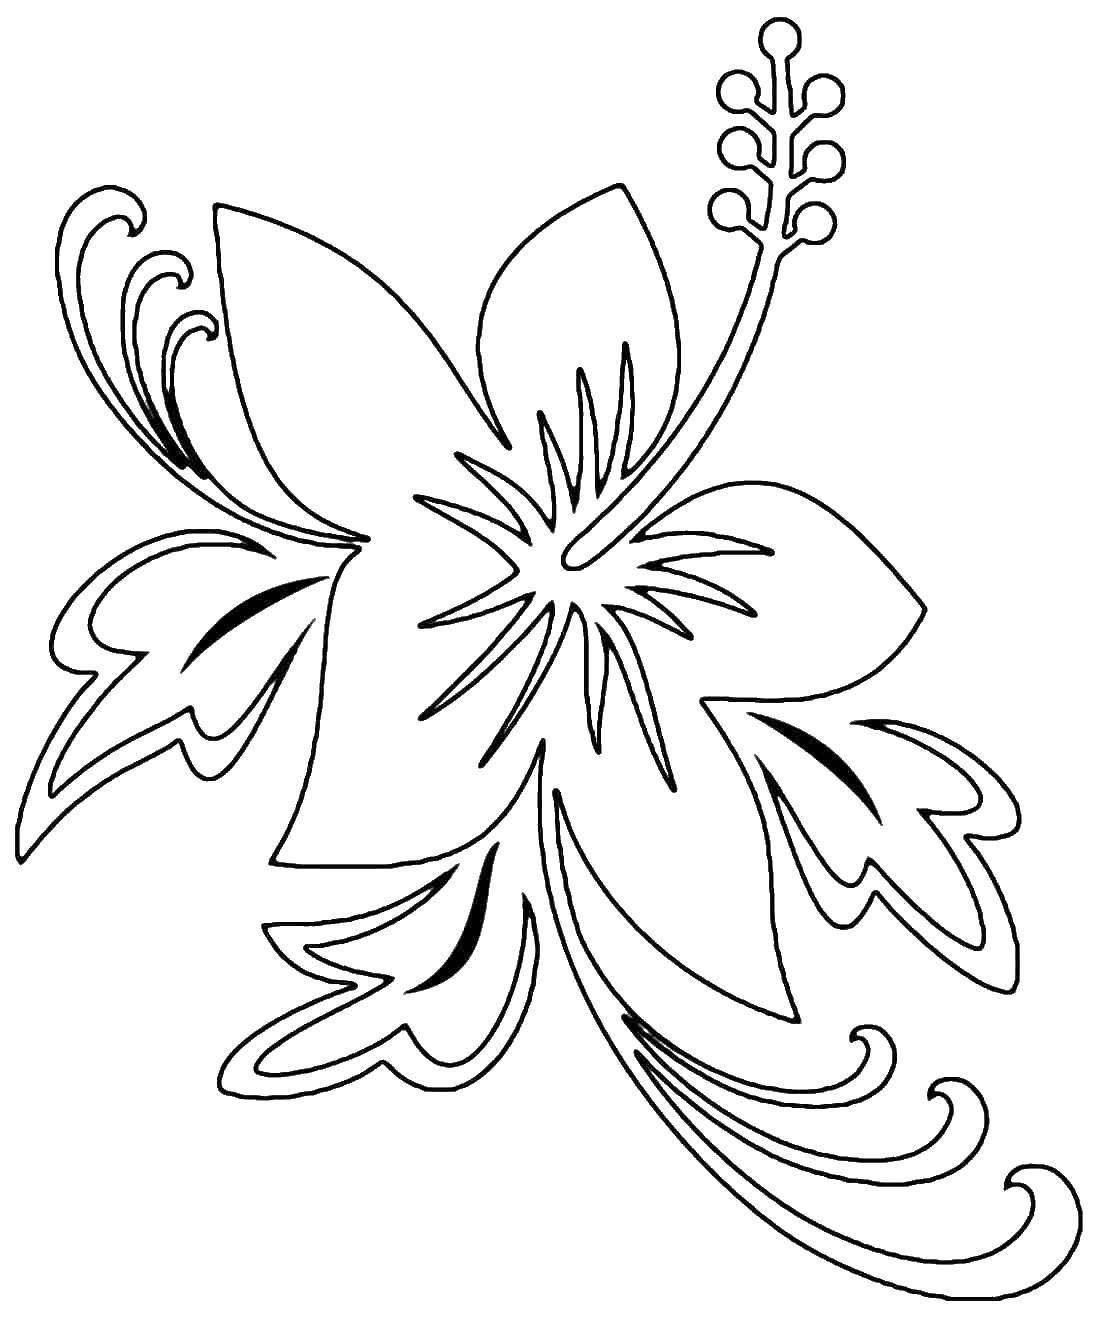 Название: Раскраска Лилия. Категория: цветы. Теги: цветы, растения, бутоны, лепестки, лилия.